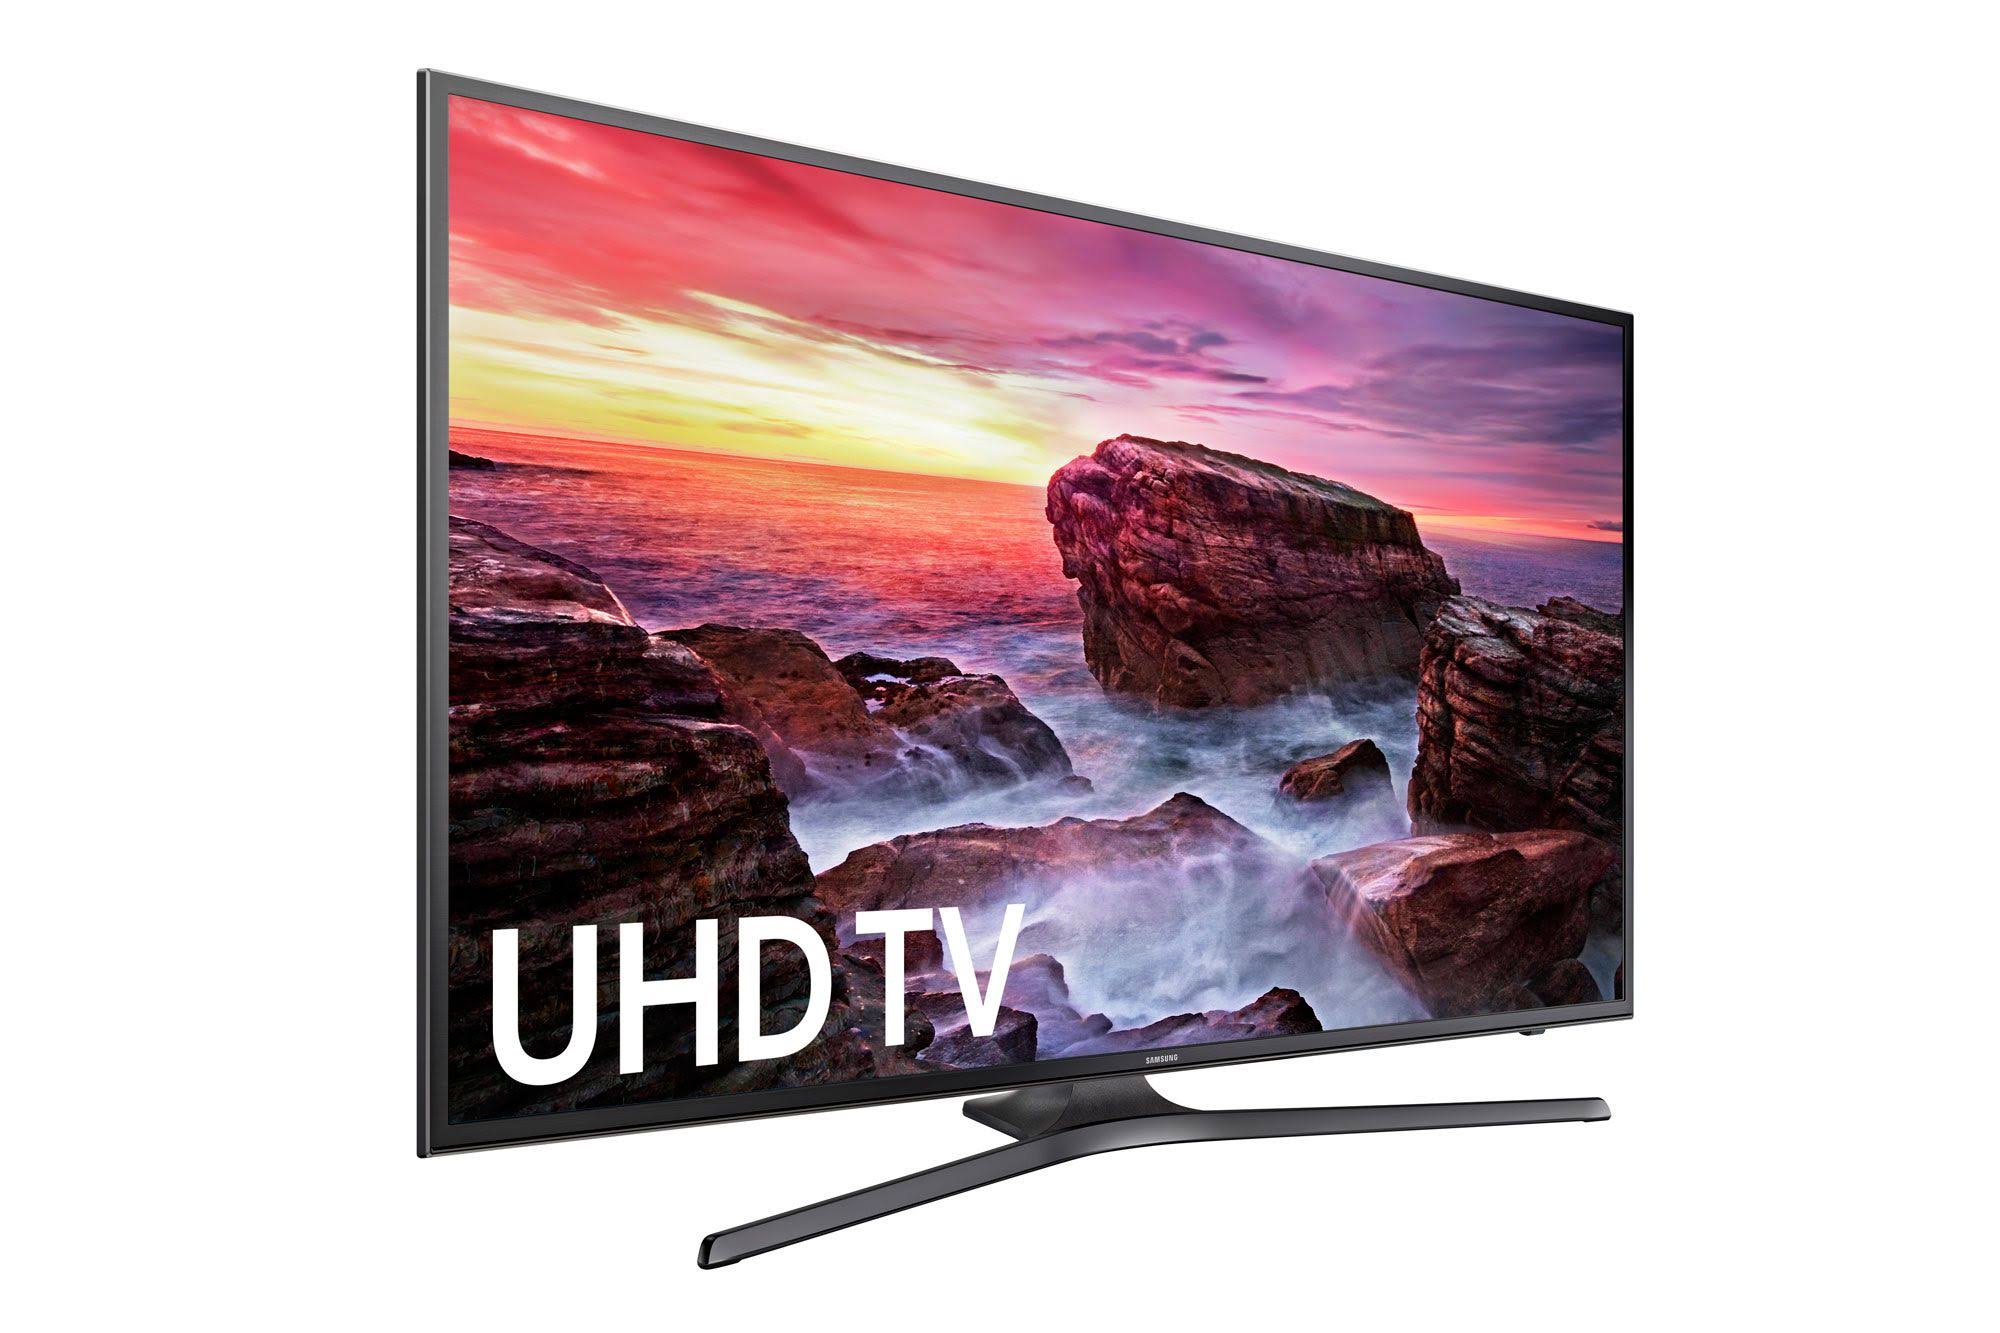 Samsung 电子UN50MU6300 50英寸4K超高清智能LED电视（2017年型号）